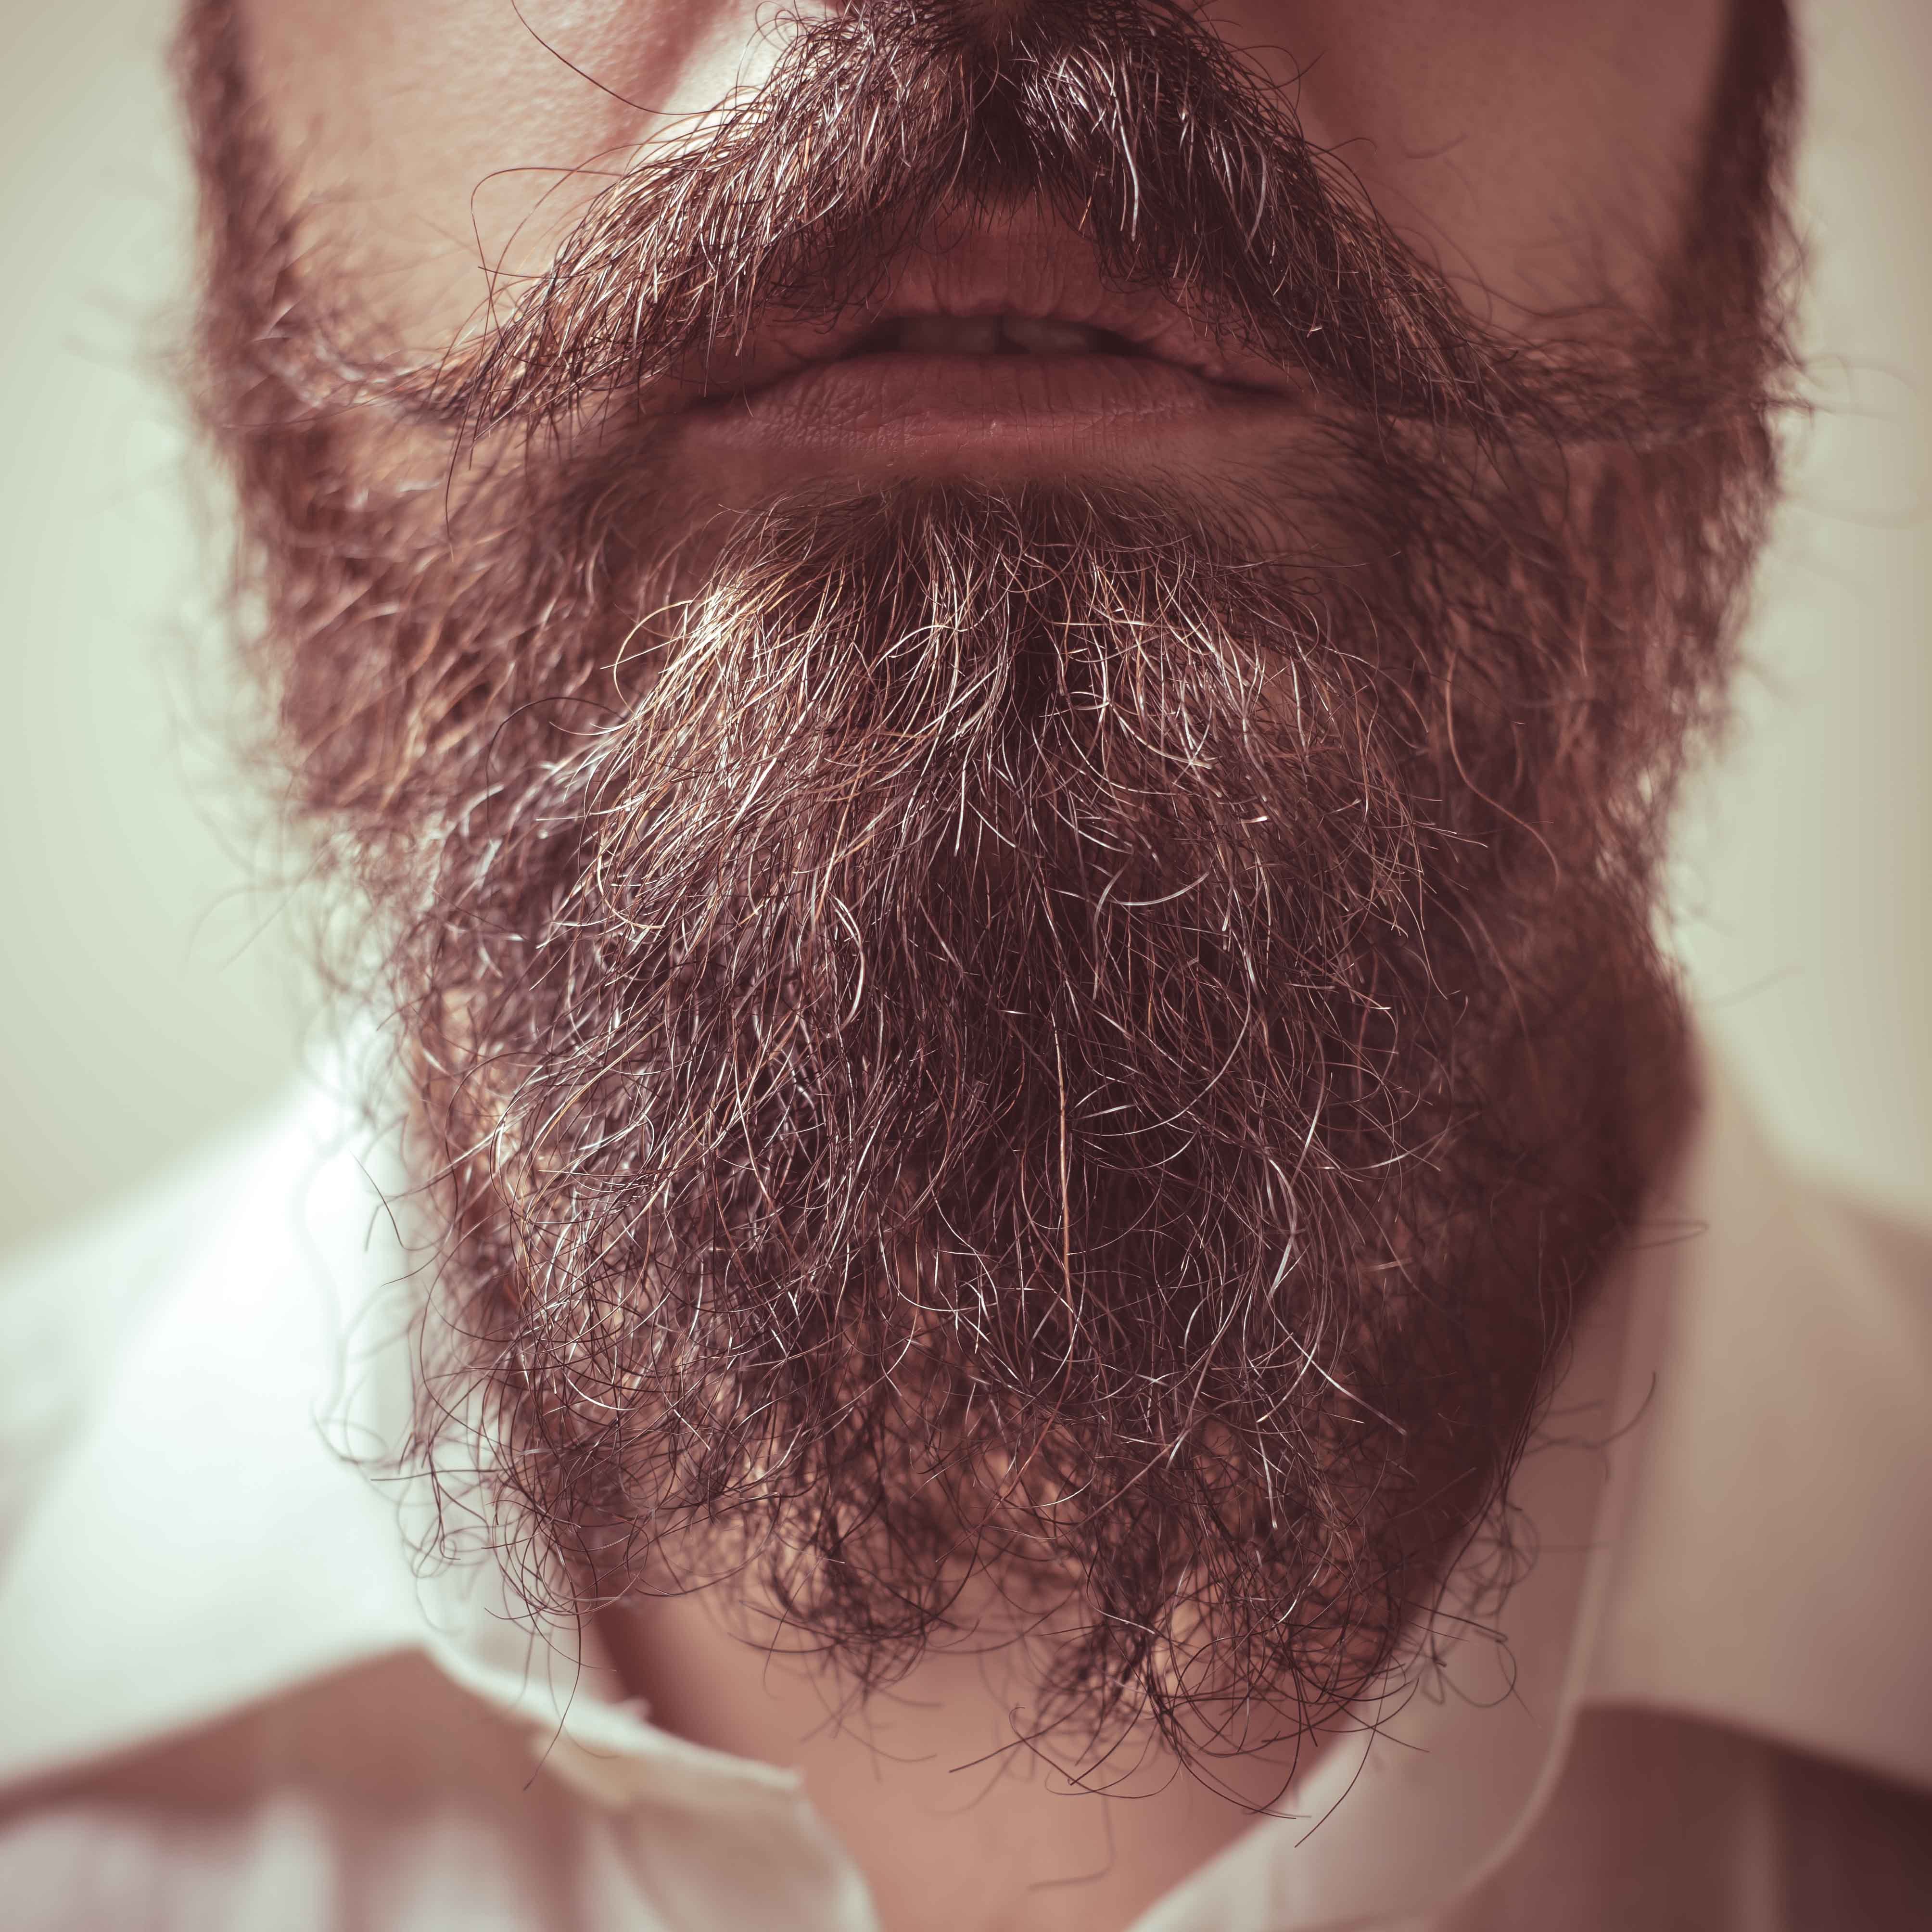 Ein Bart aus der Nähe | Quelle: Shutterstock